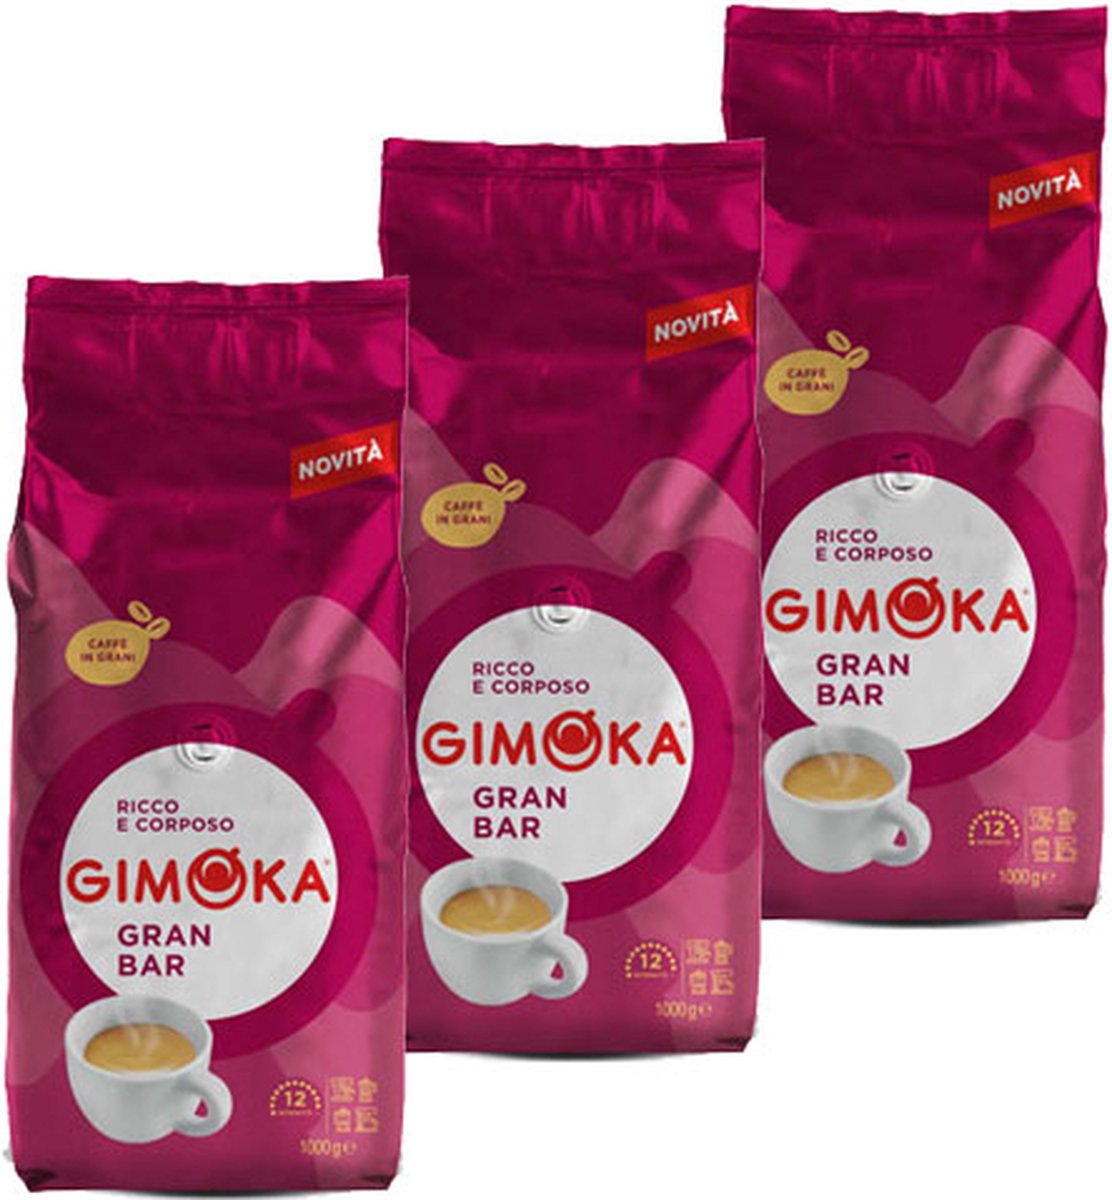 Gimoka Gran Bar - koffiebonen - 3 x 1 kilo